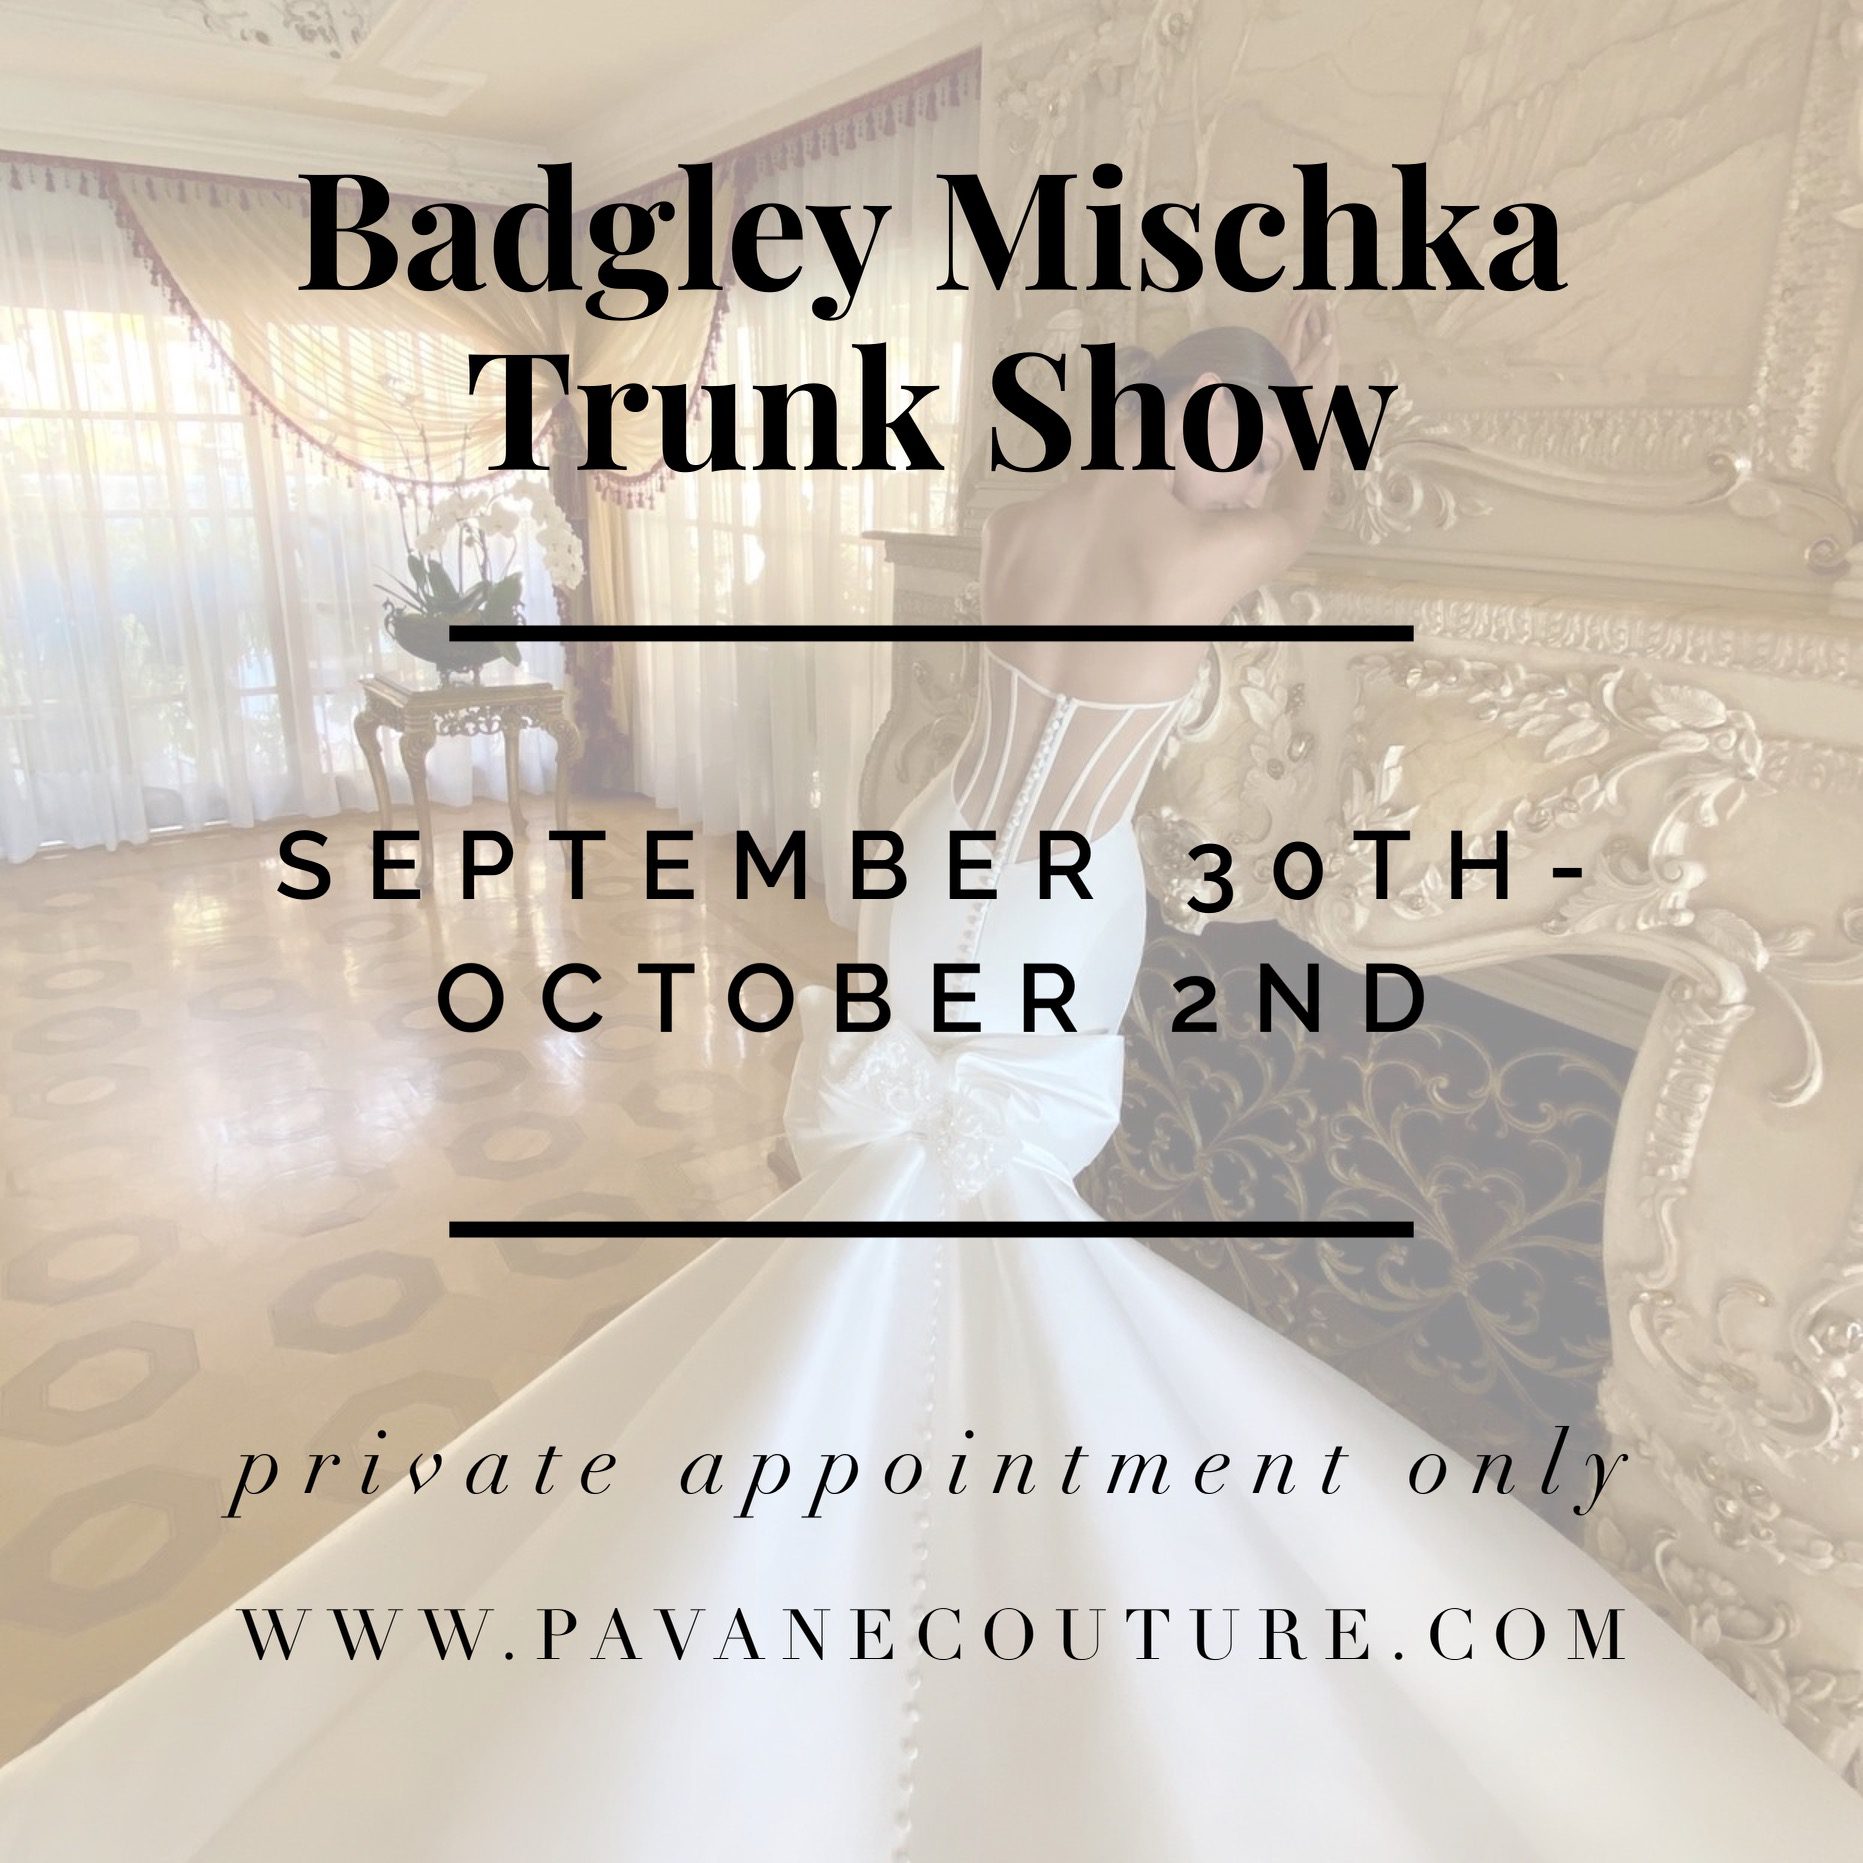 Badgley Mischka Trunk Show